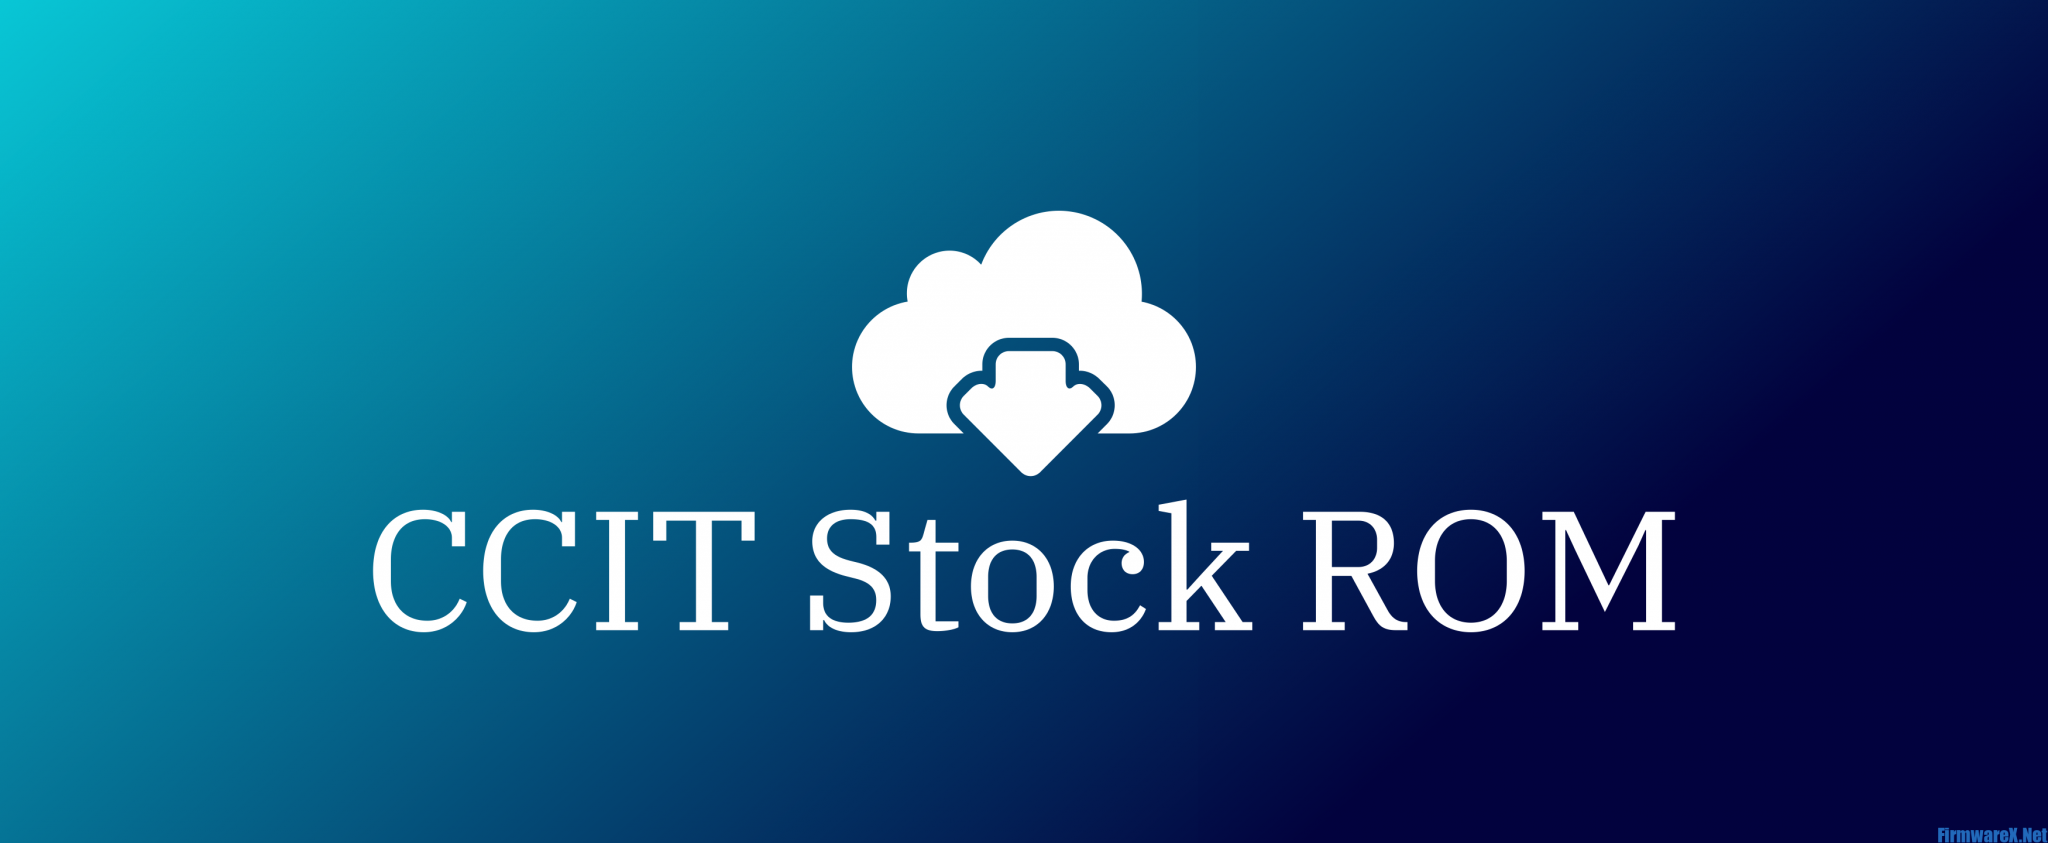 CCIT Stock ROM